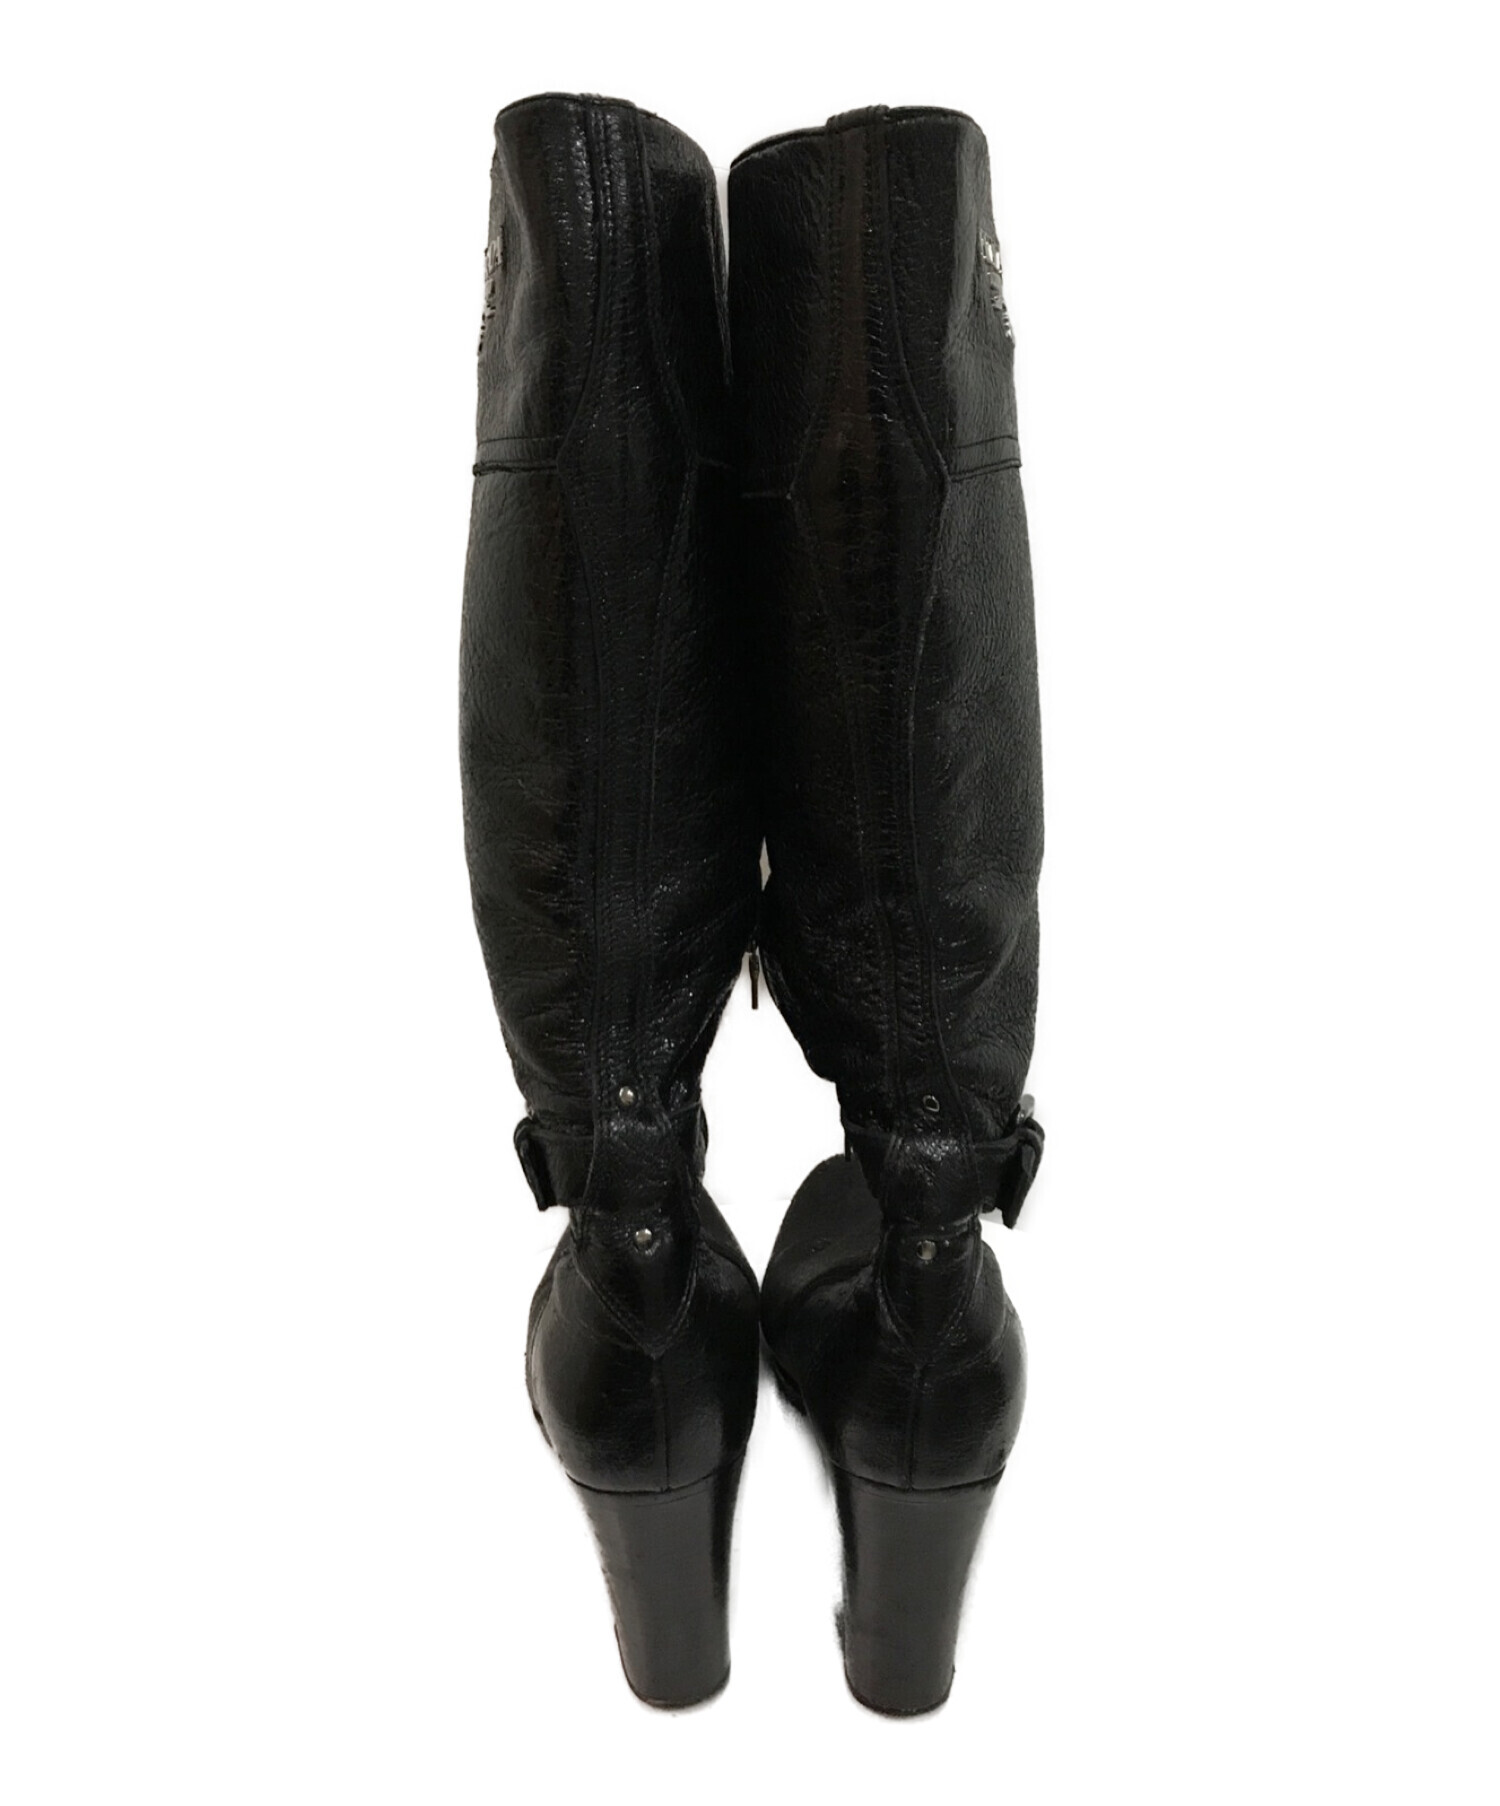 プラダ PRADA ロゴ ベルト ジョッキー ロングブーツ 黒 36 1/2231cmヒールの高さ